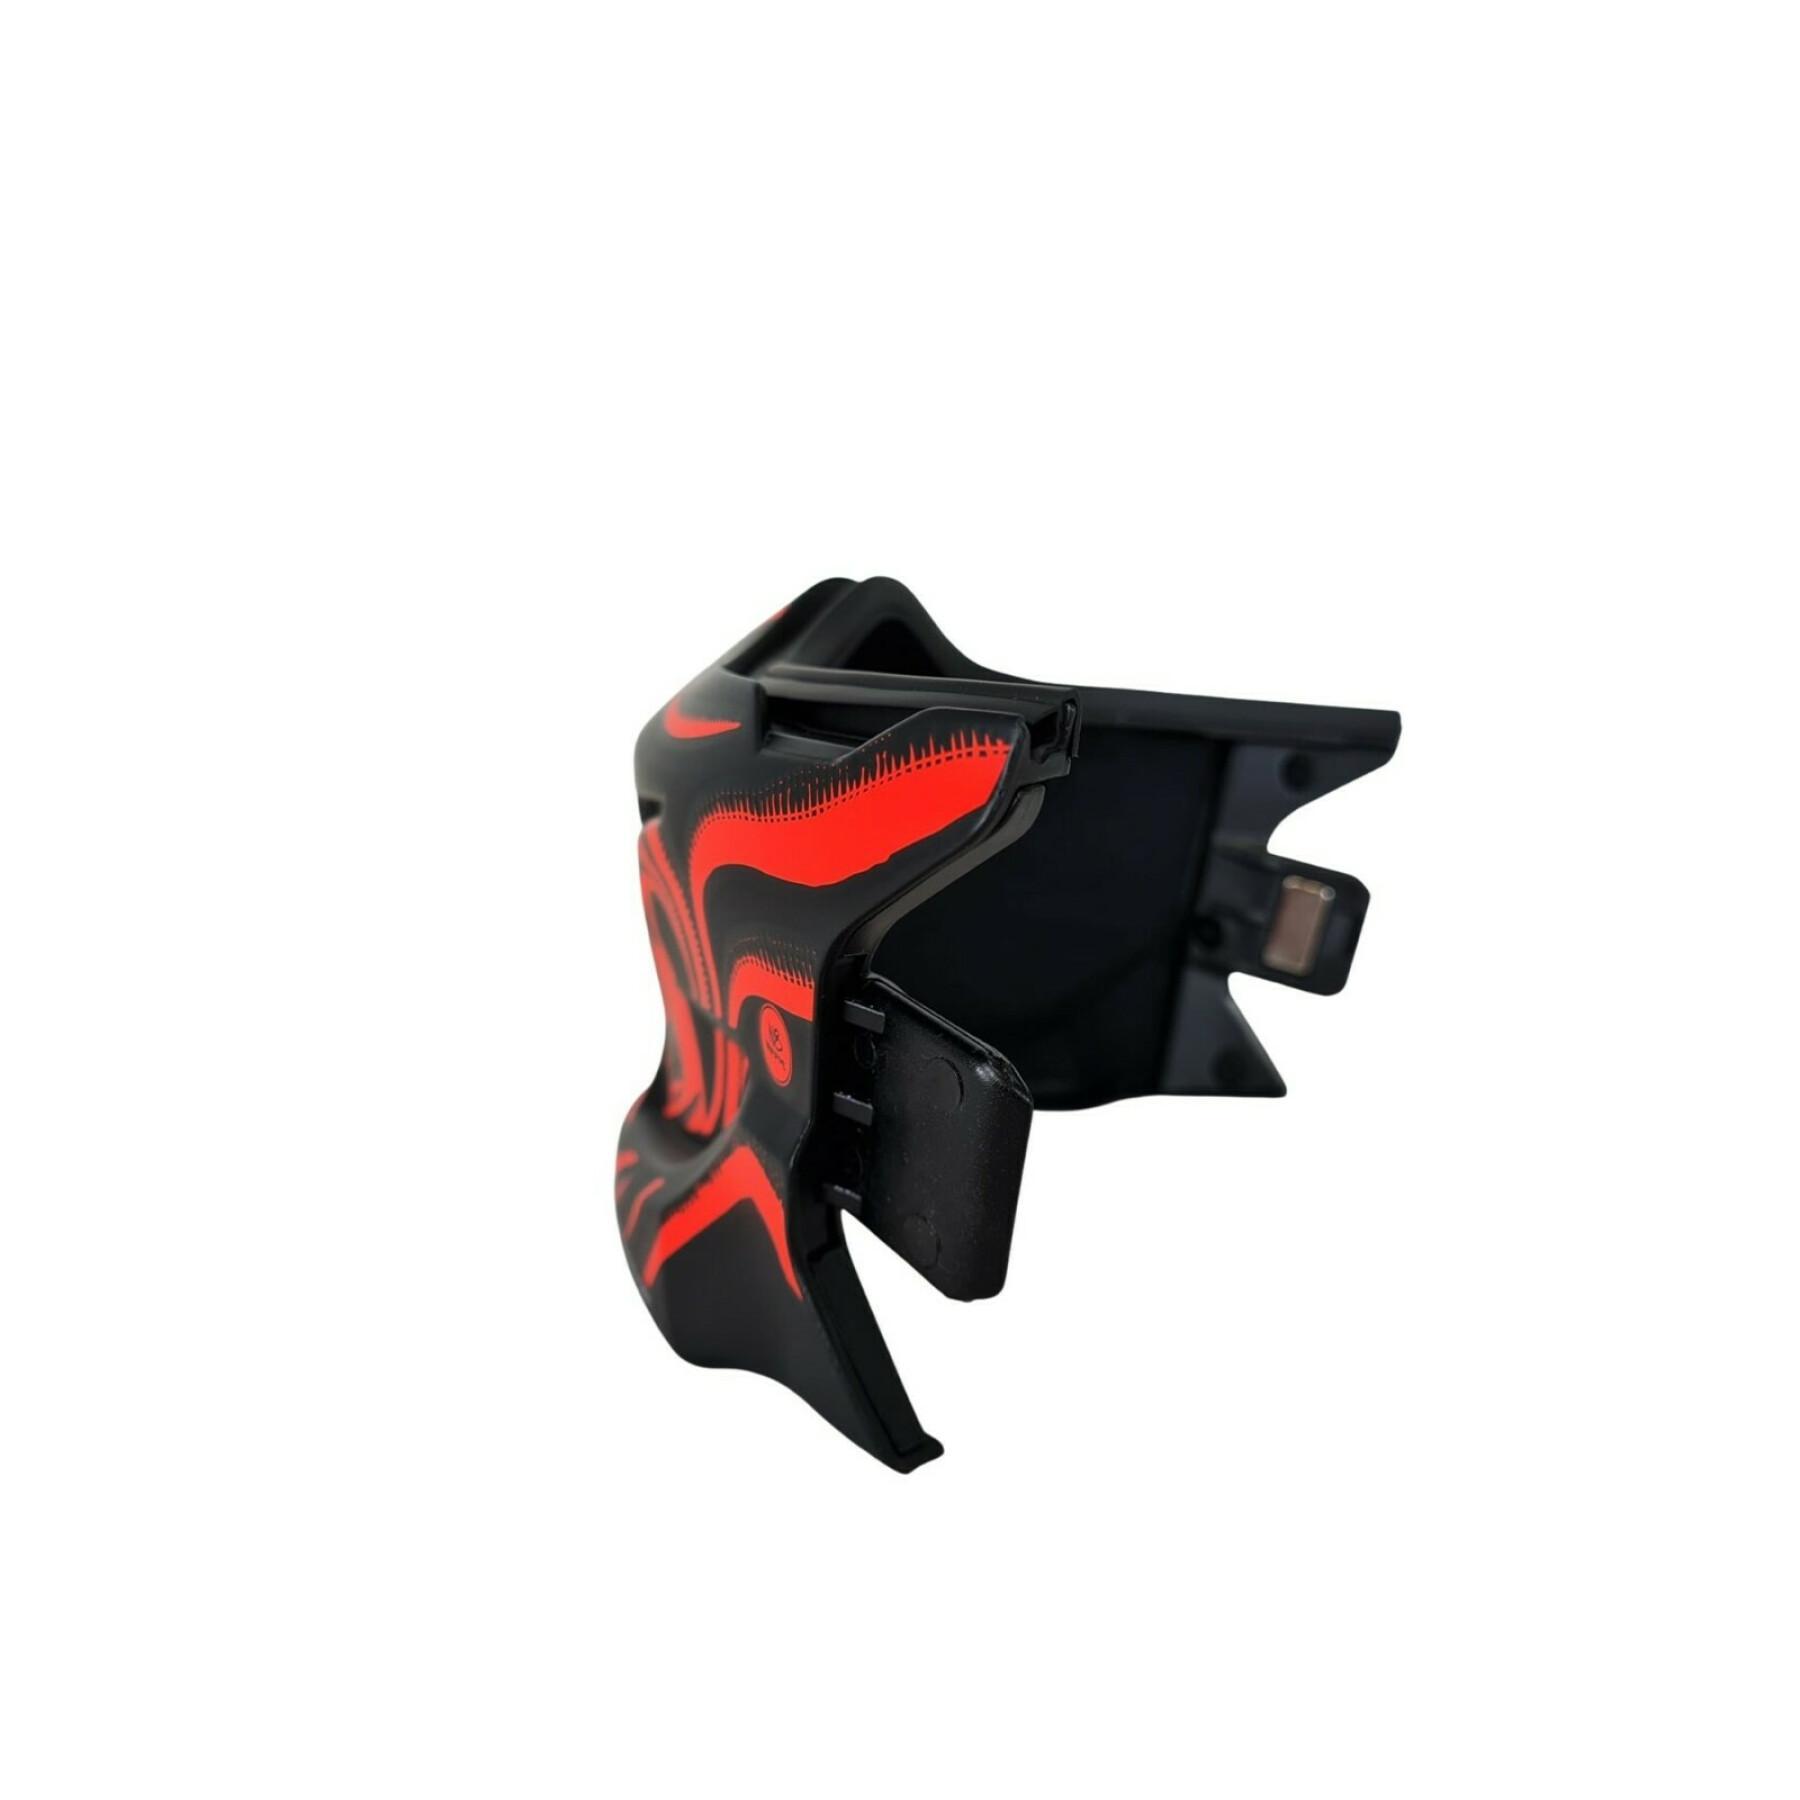 Maschera da moto Scorpion Exo-Combat evo mask SAMURAI